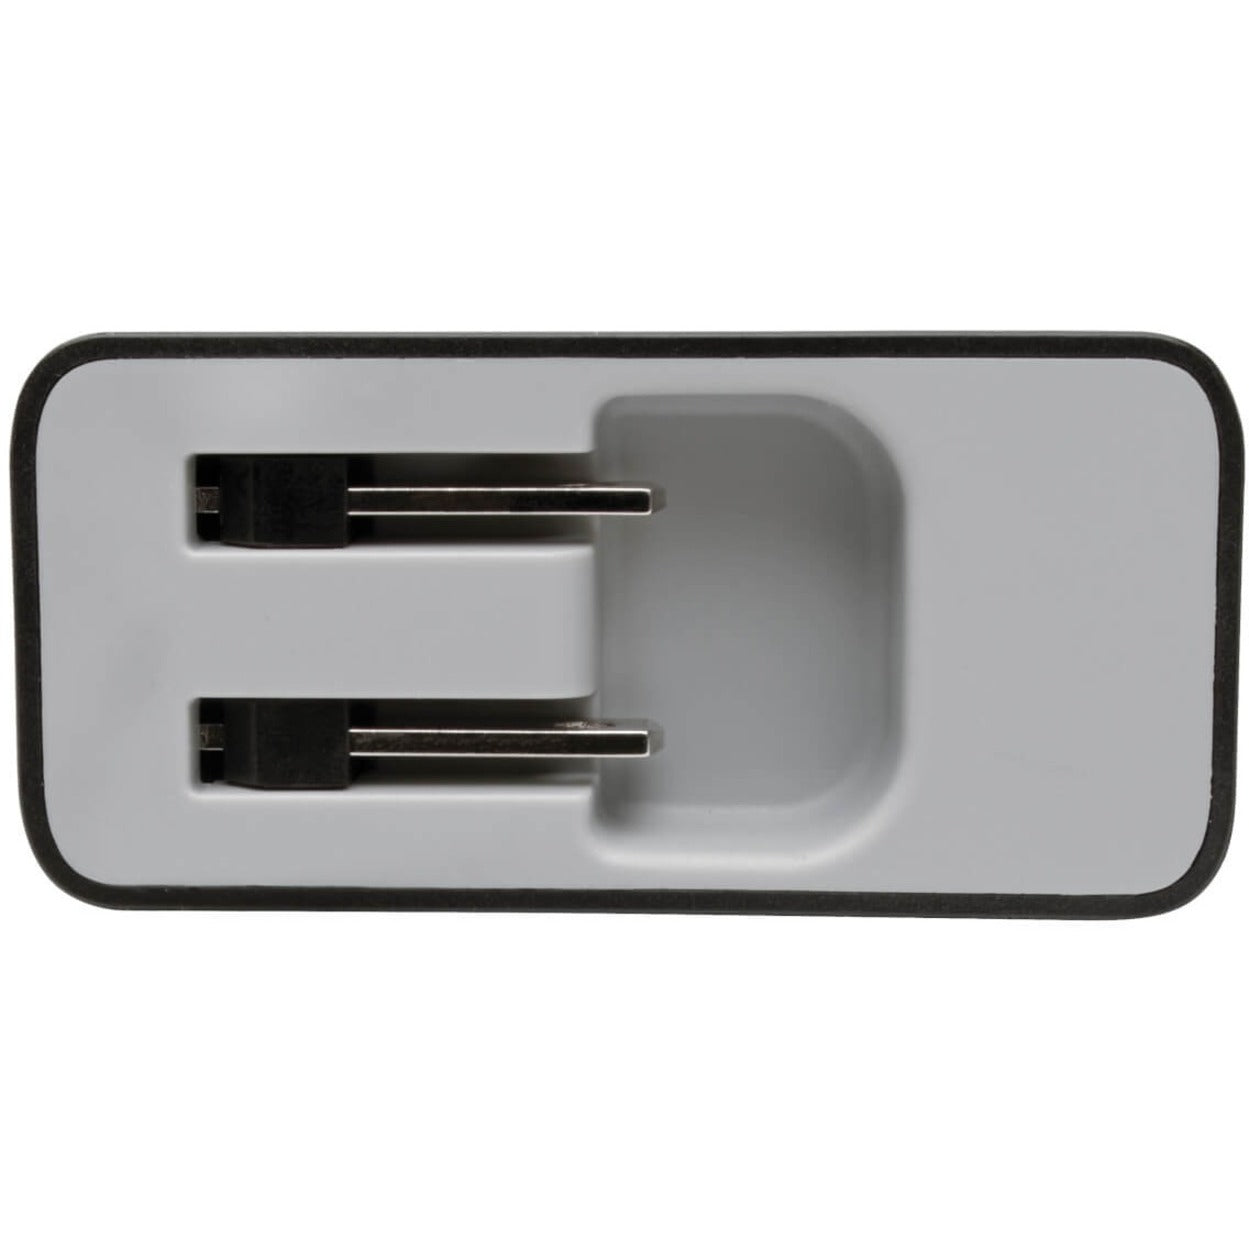 Tripp Lite U280-W02-A1C1 Adattatore AC Caricabatterie da parete USB a 2 porte con USB Tipo C Potenza 51W Garanzia 2 Anni